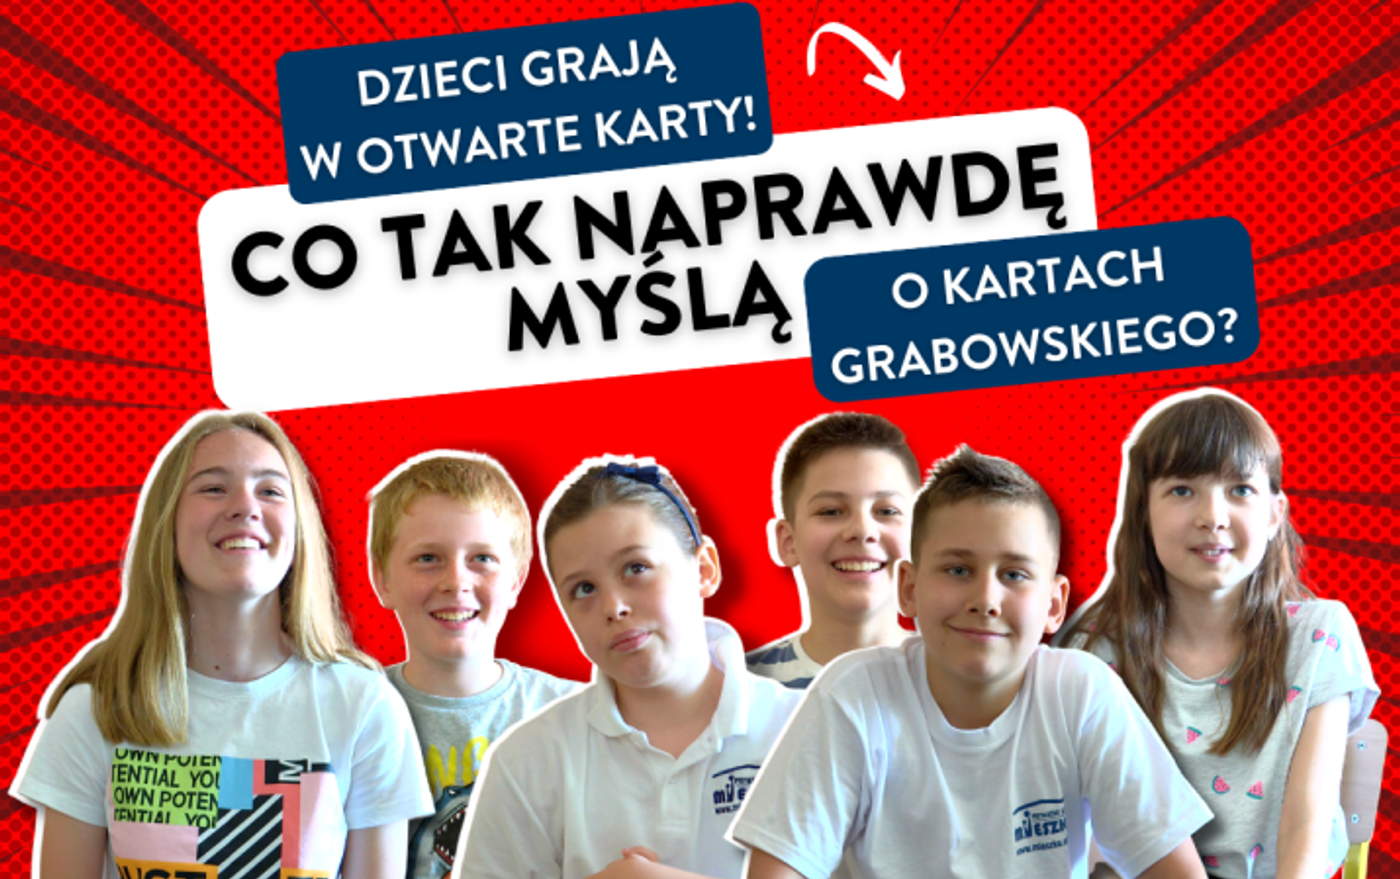 Cover Image for Dzieci grają w otwarte Karty - czyli co tak naprawdę myślą o Kartach Grabowskiego?